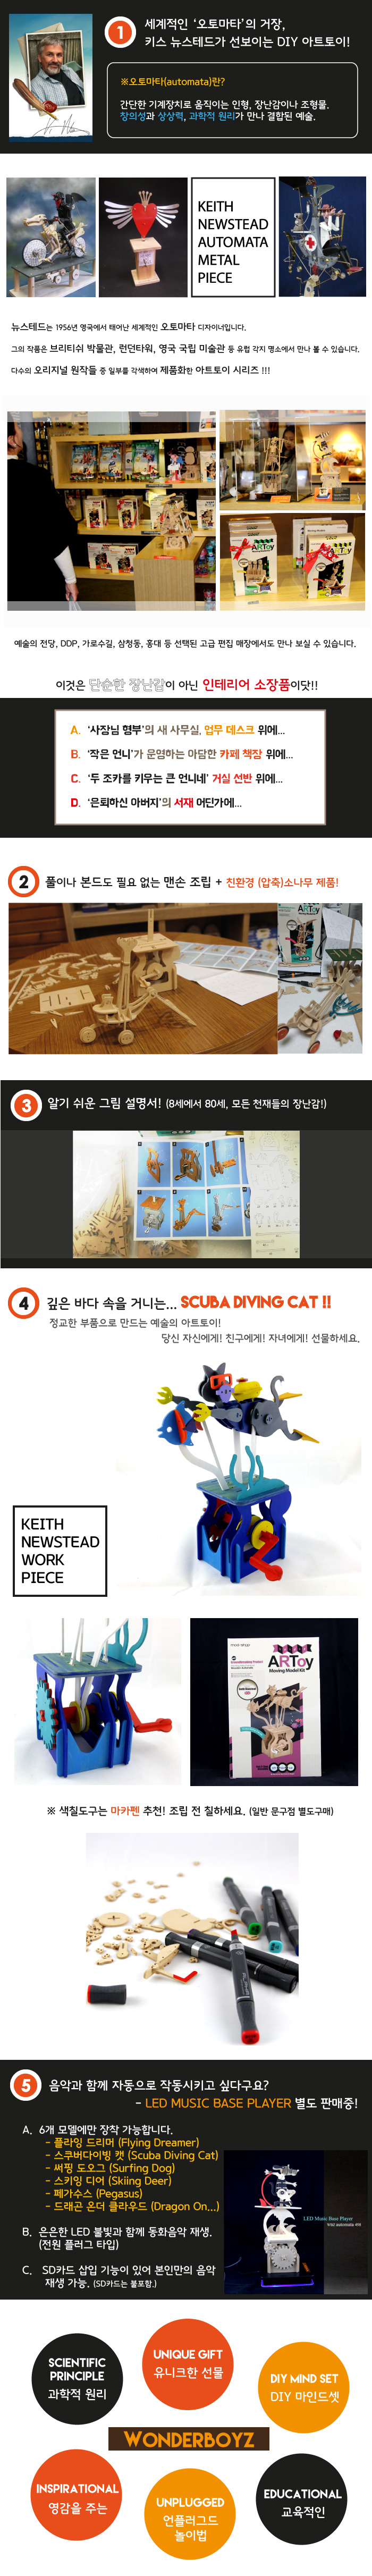 스쿠바 고양이-Scuba Diving Cat 35,800원 - 원더보이즈 키덜트/취미, 피규어, 아트토이, 우드토이 바보사랑 스쿠바 고양이-Scuba Diving Cat 35,800원 - 원더보이즈 키덜트/취미, 피규어, 아트토이, 우드토이 바보사랑